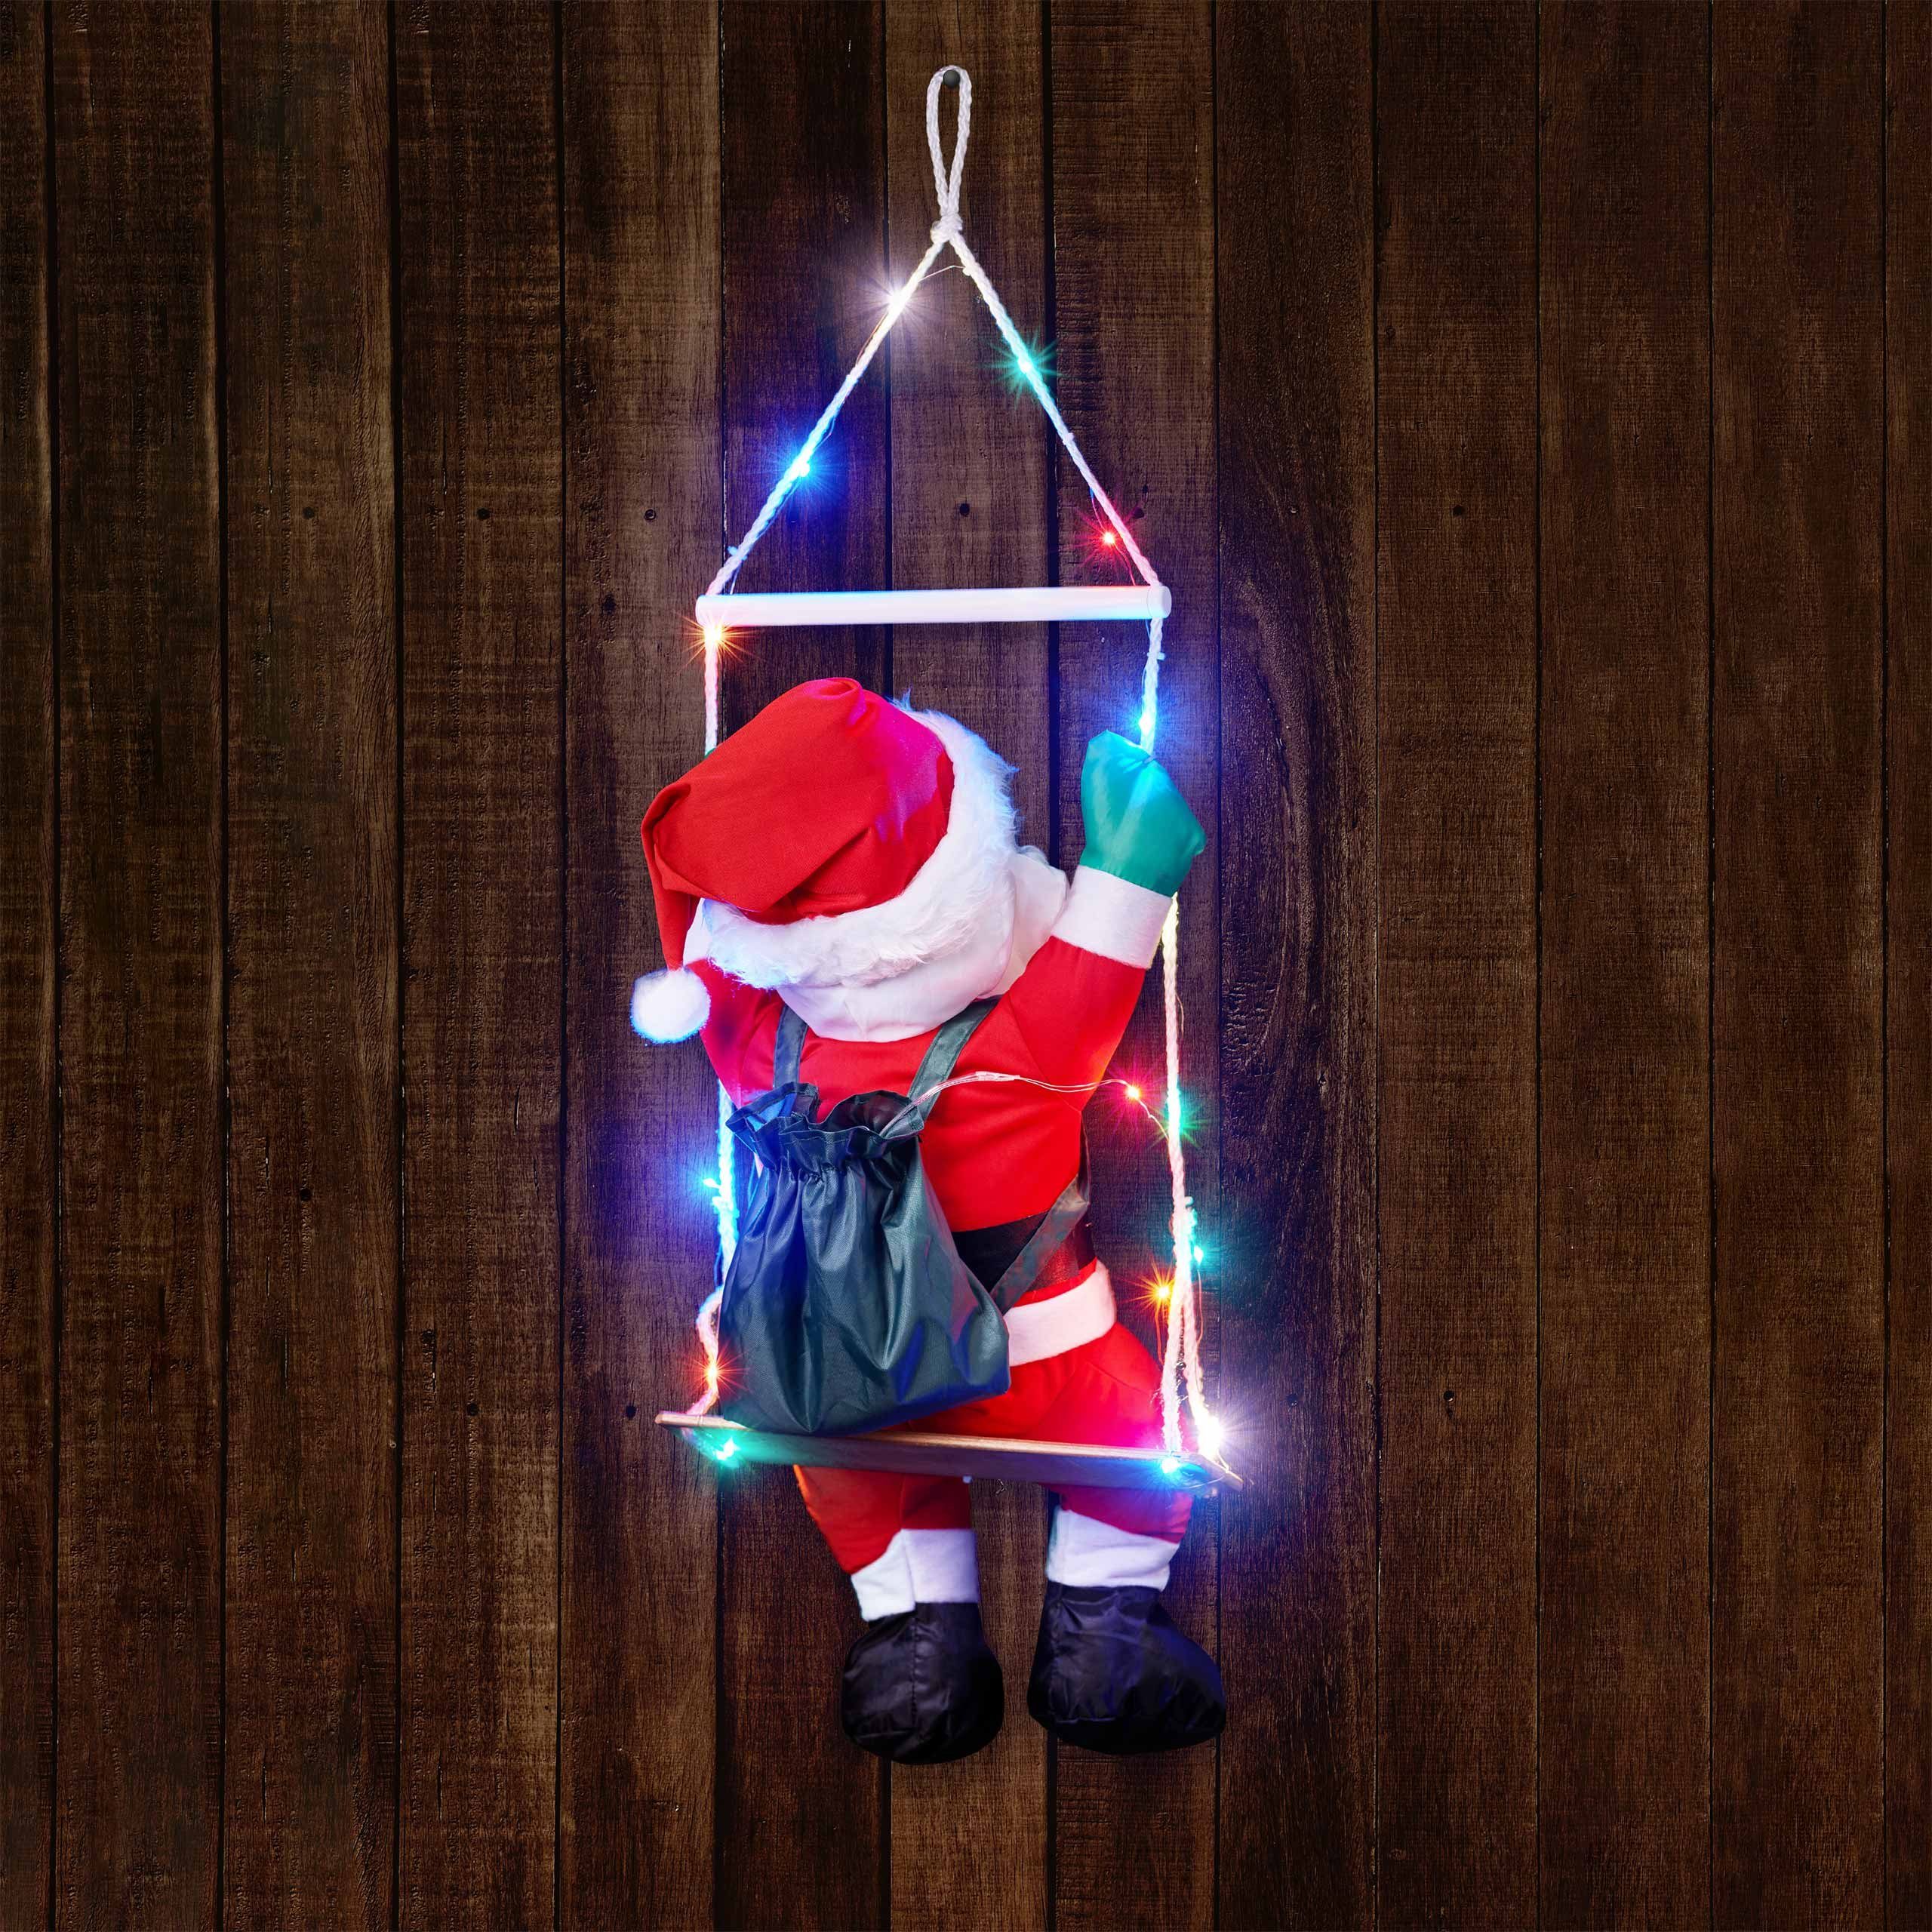 BONETTI Raburg Weihnachtsmann Schaukel 20 XL Timer, bunten mit Deko-Figur mit groß, 90 Weihnachten, cm für cm LEDs, 6 ca. Gesamthöhe: ca. h auf bunten weiche LEDs, 60